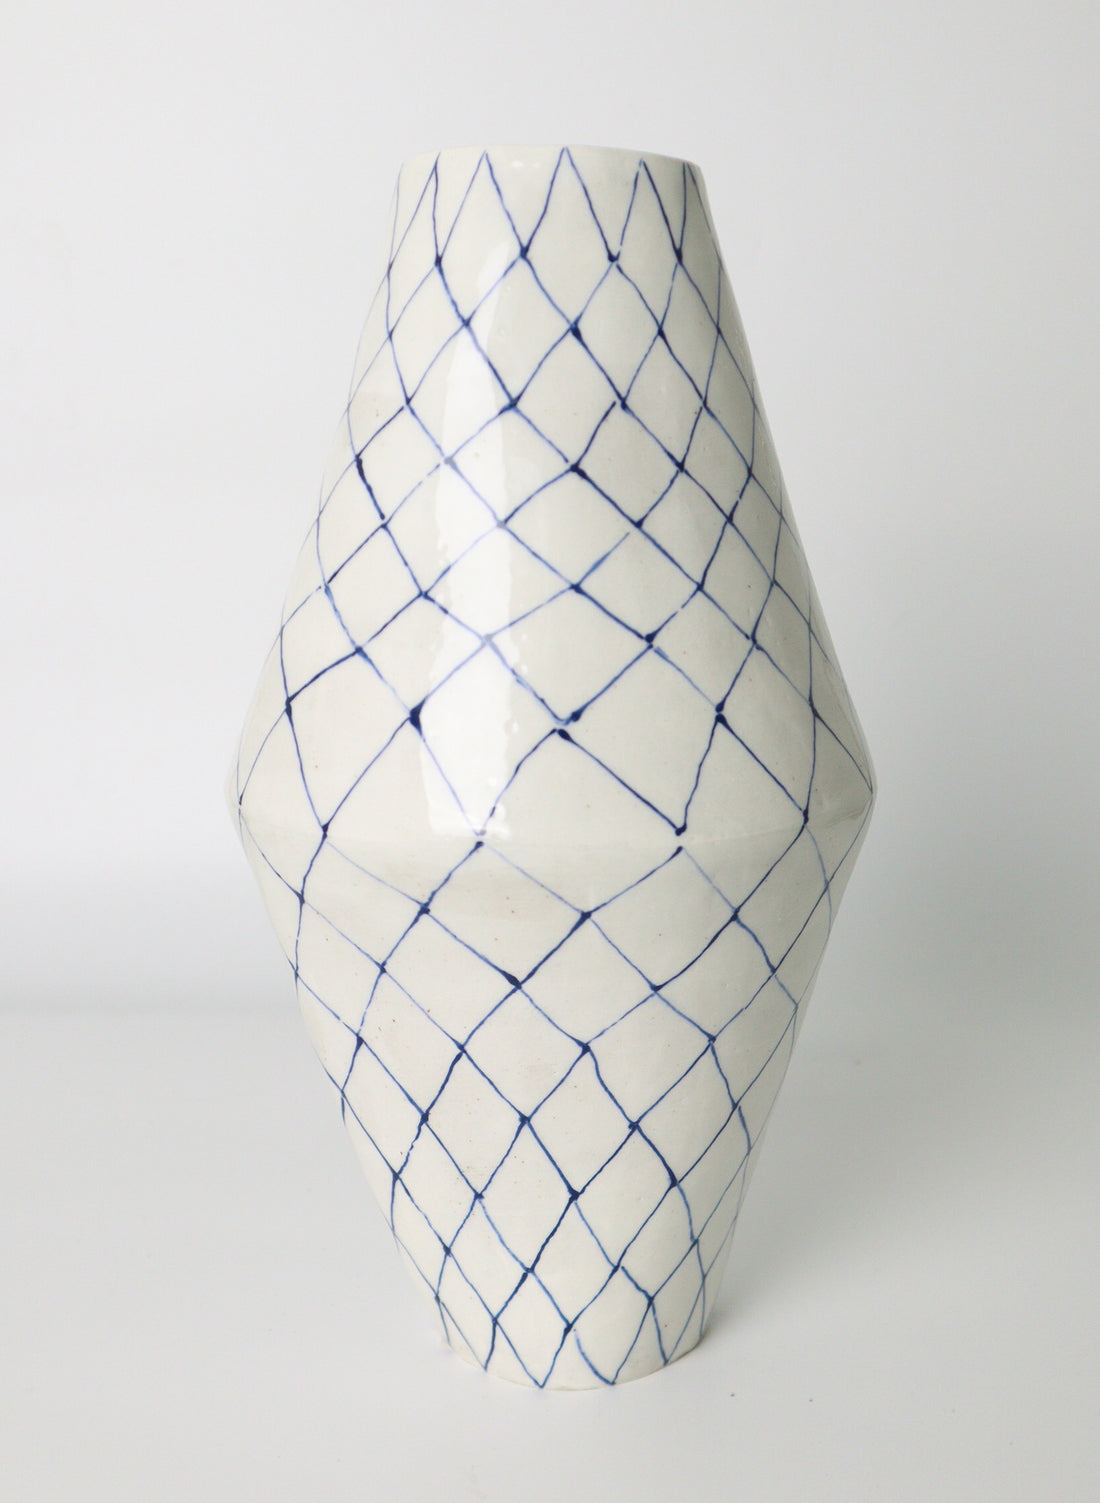 Handrawn Vase